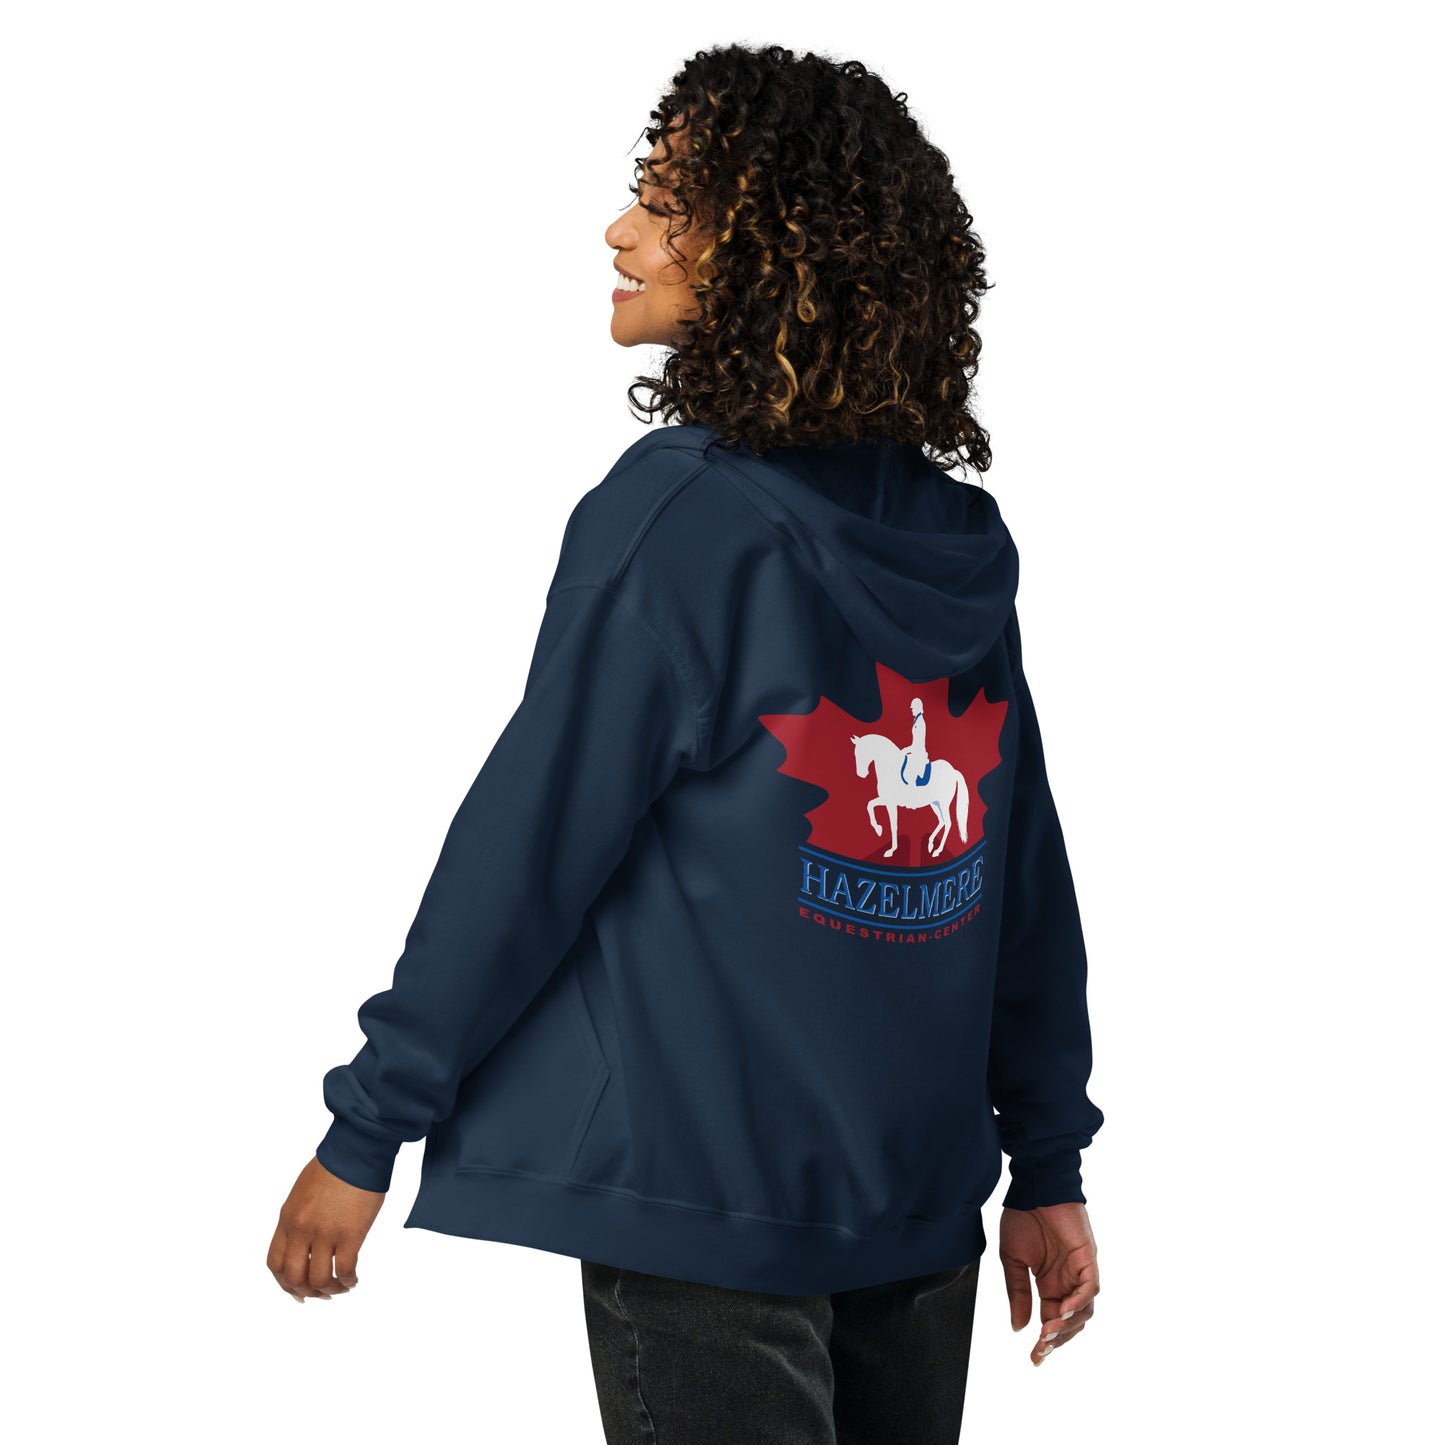 Hazelmere Equestrian Center Unisex Heavy Blend Zip Hoodie